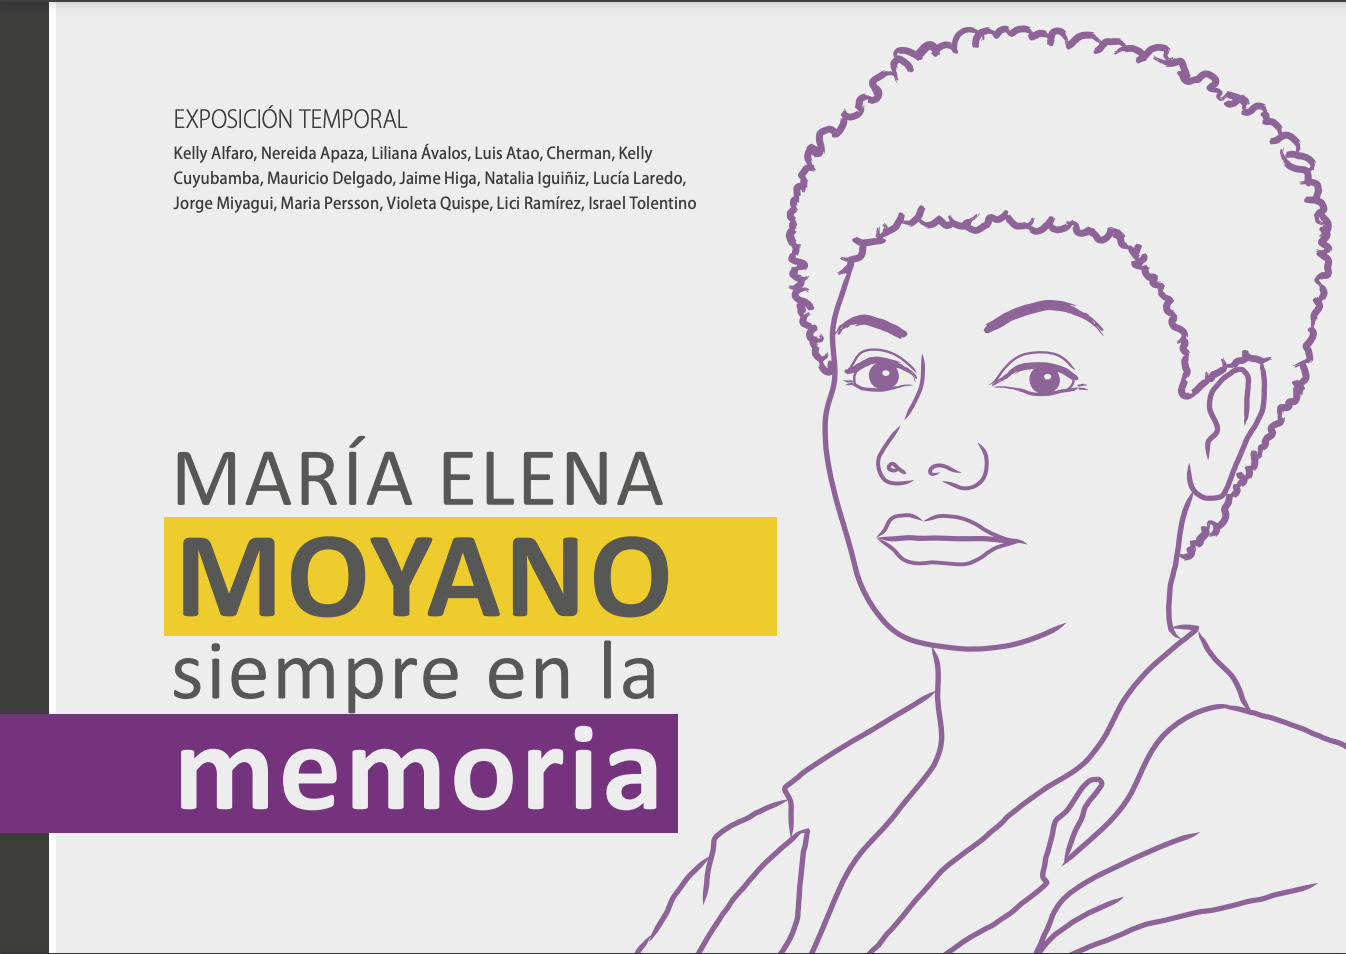 Maria Elena Moyano